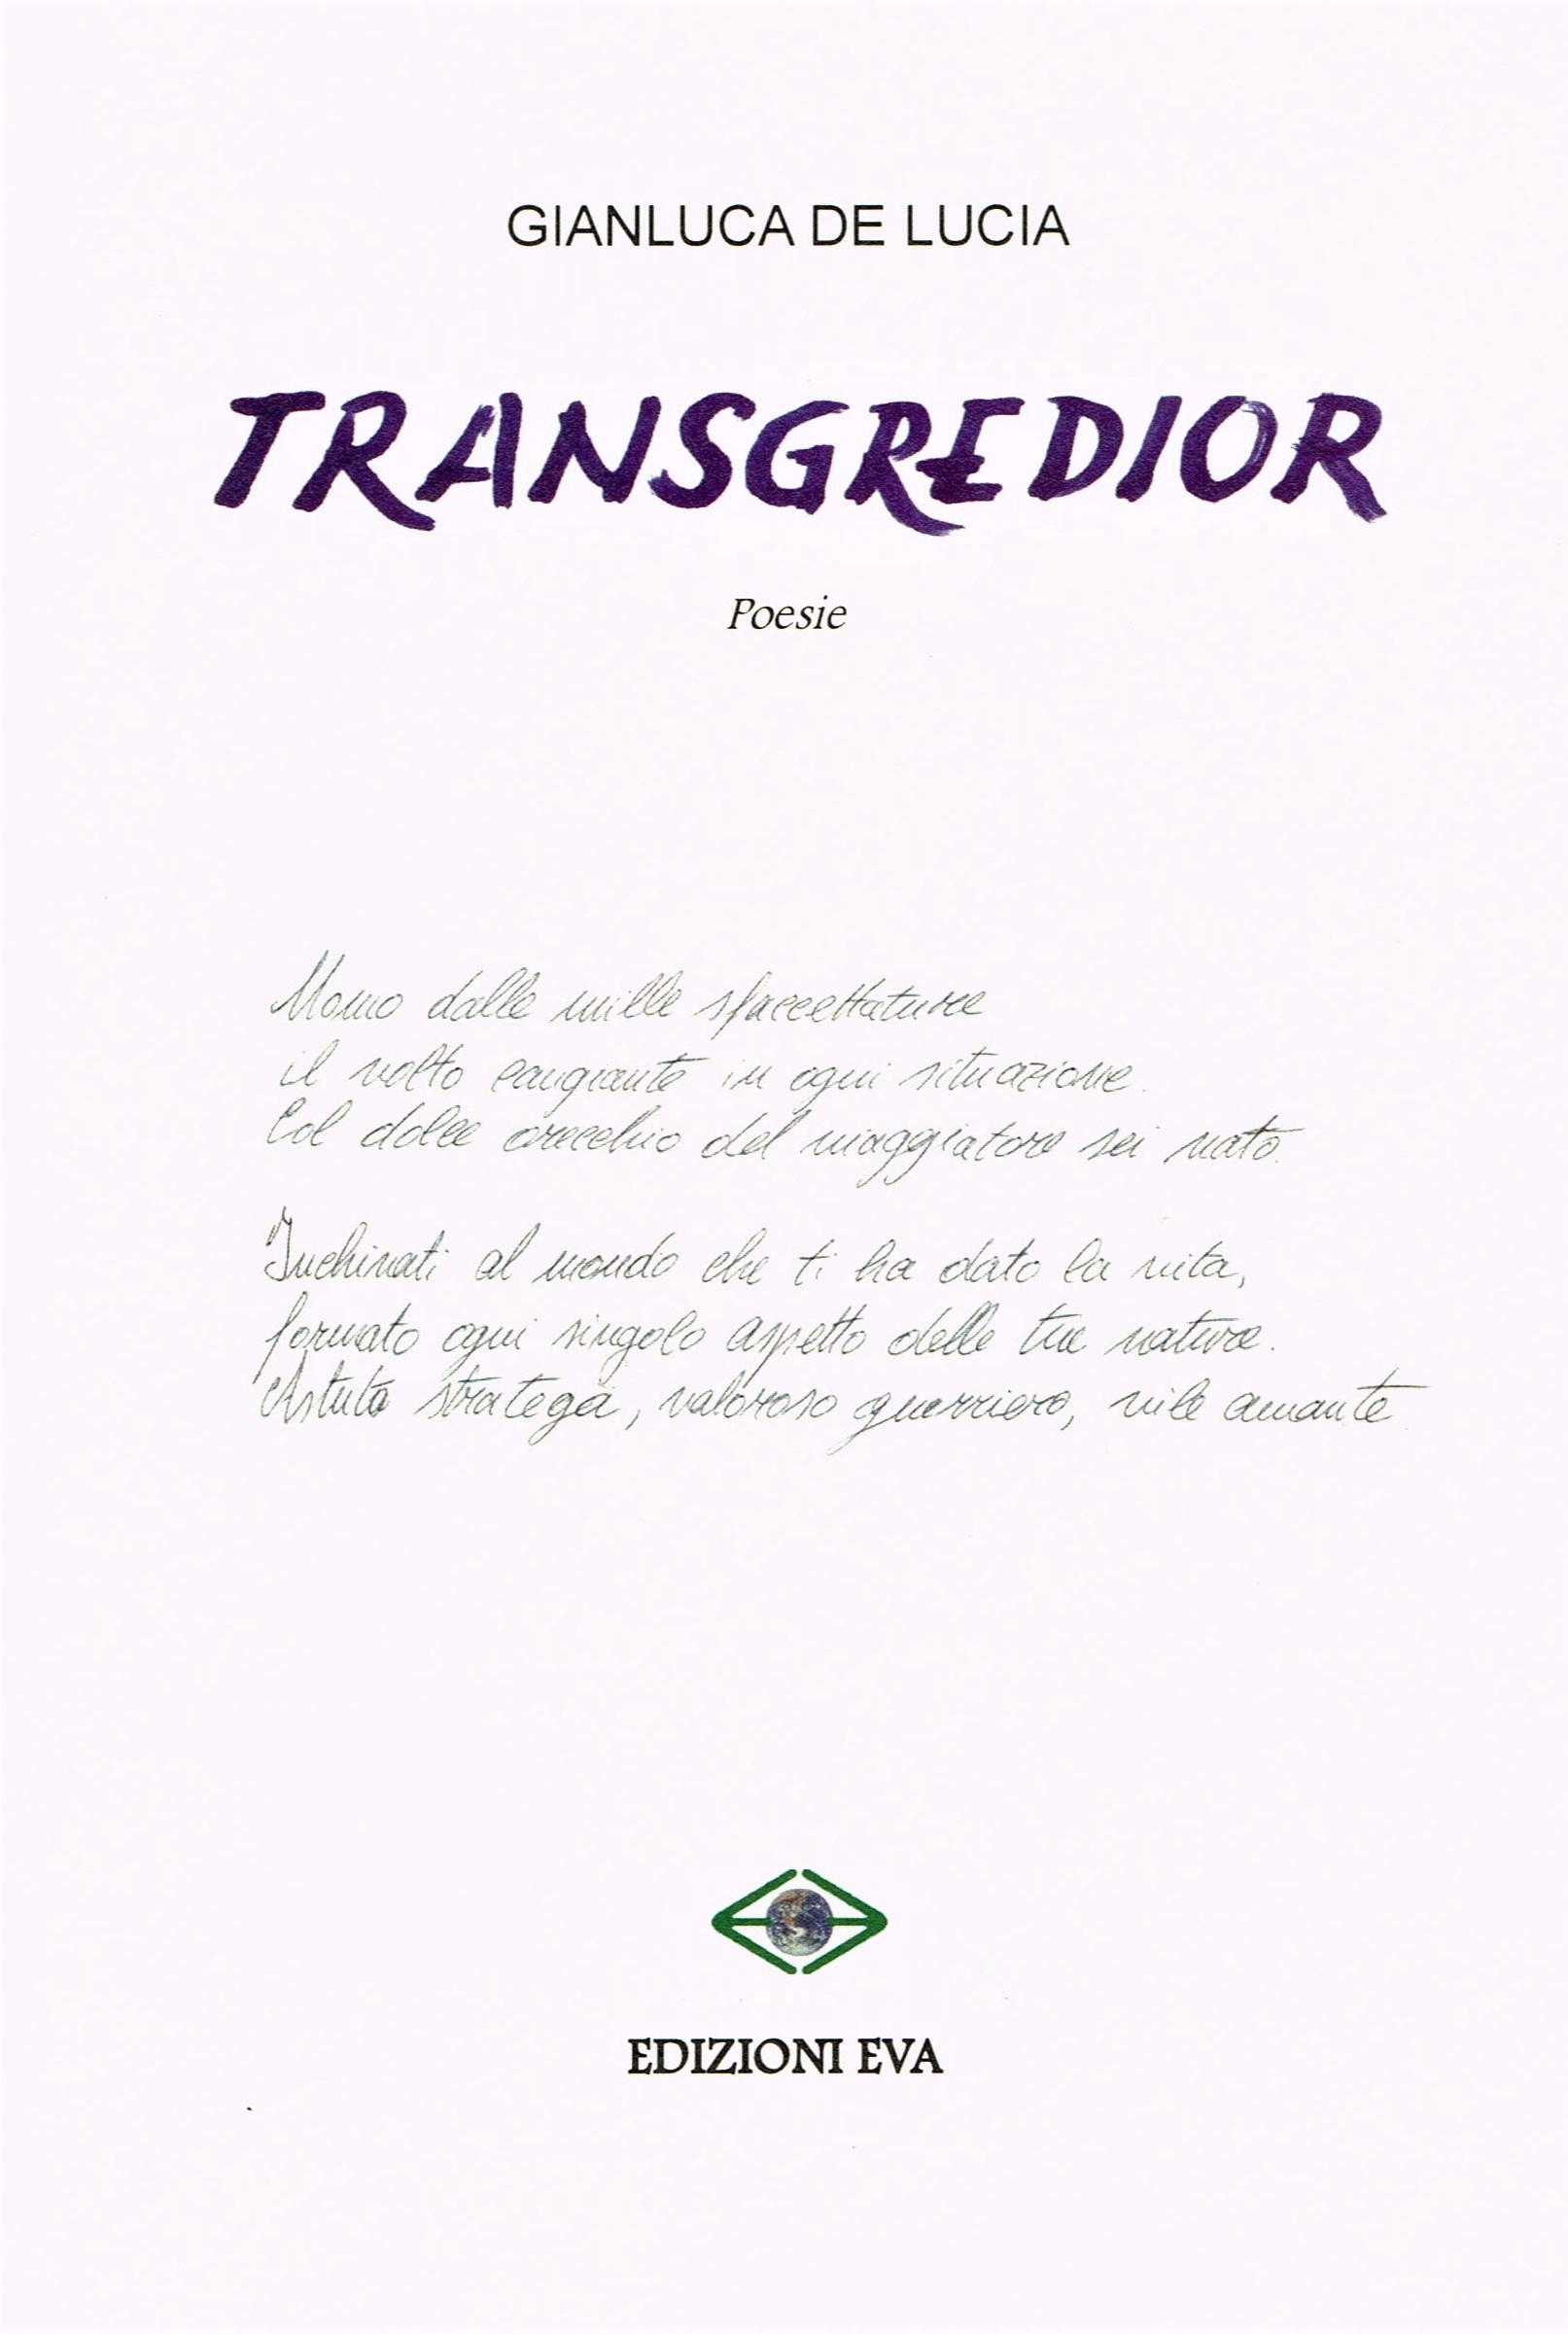 Transgredior